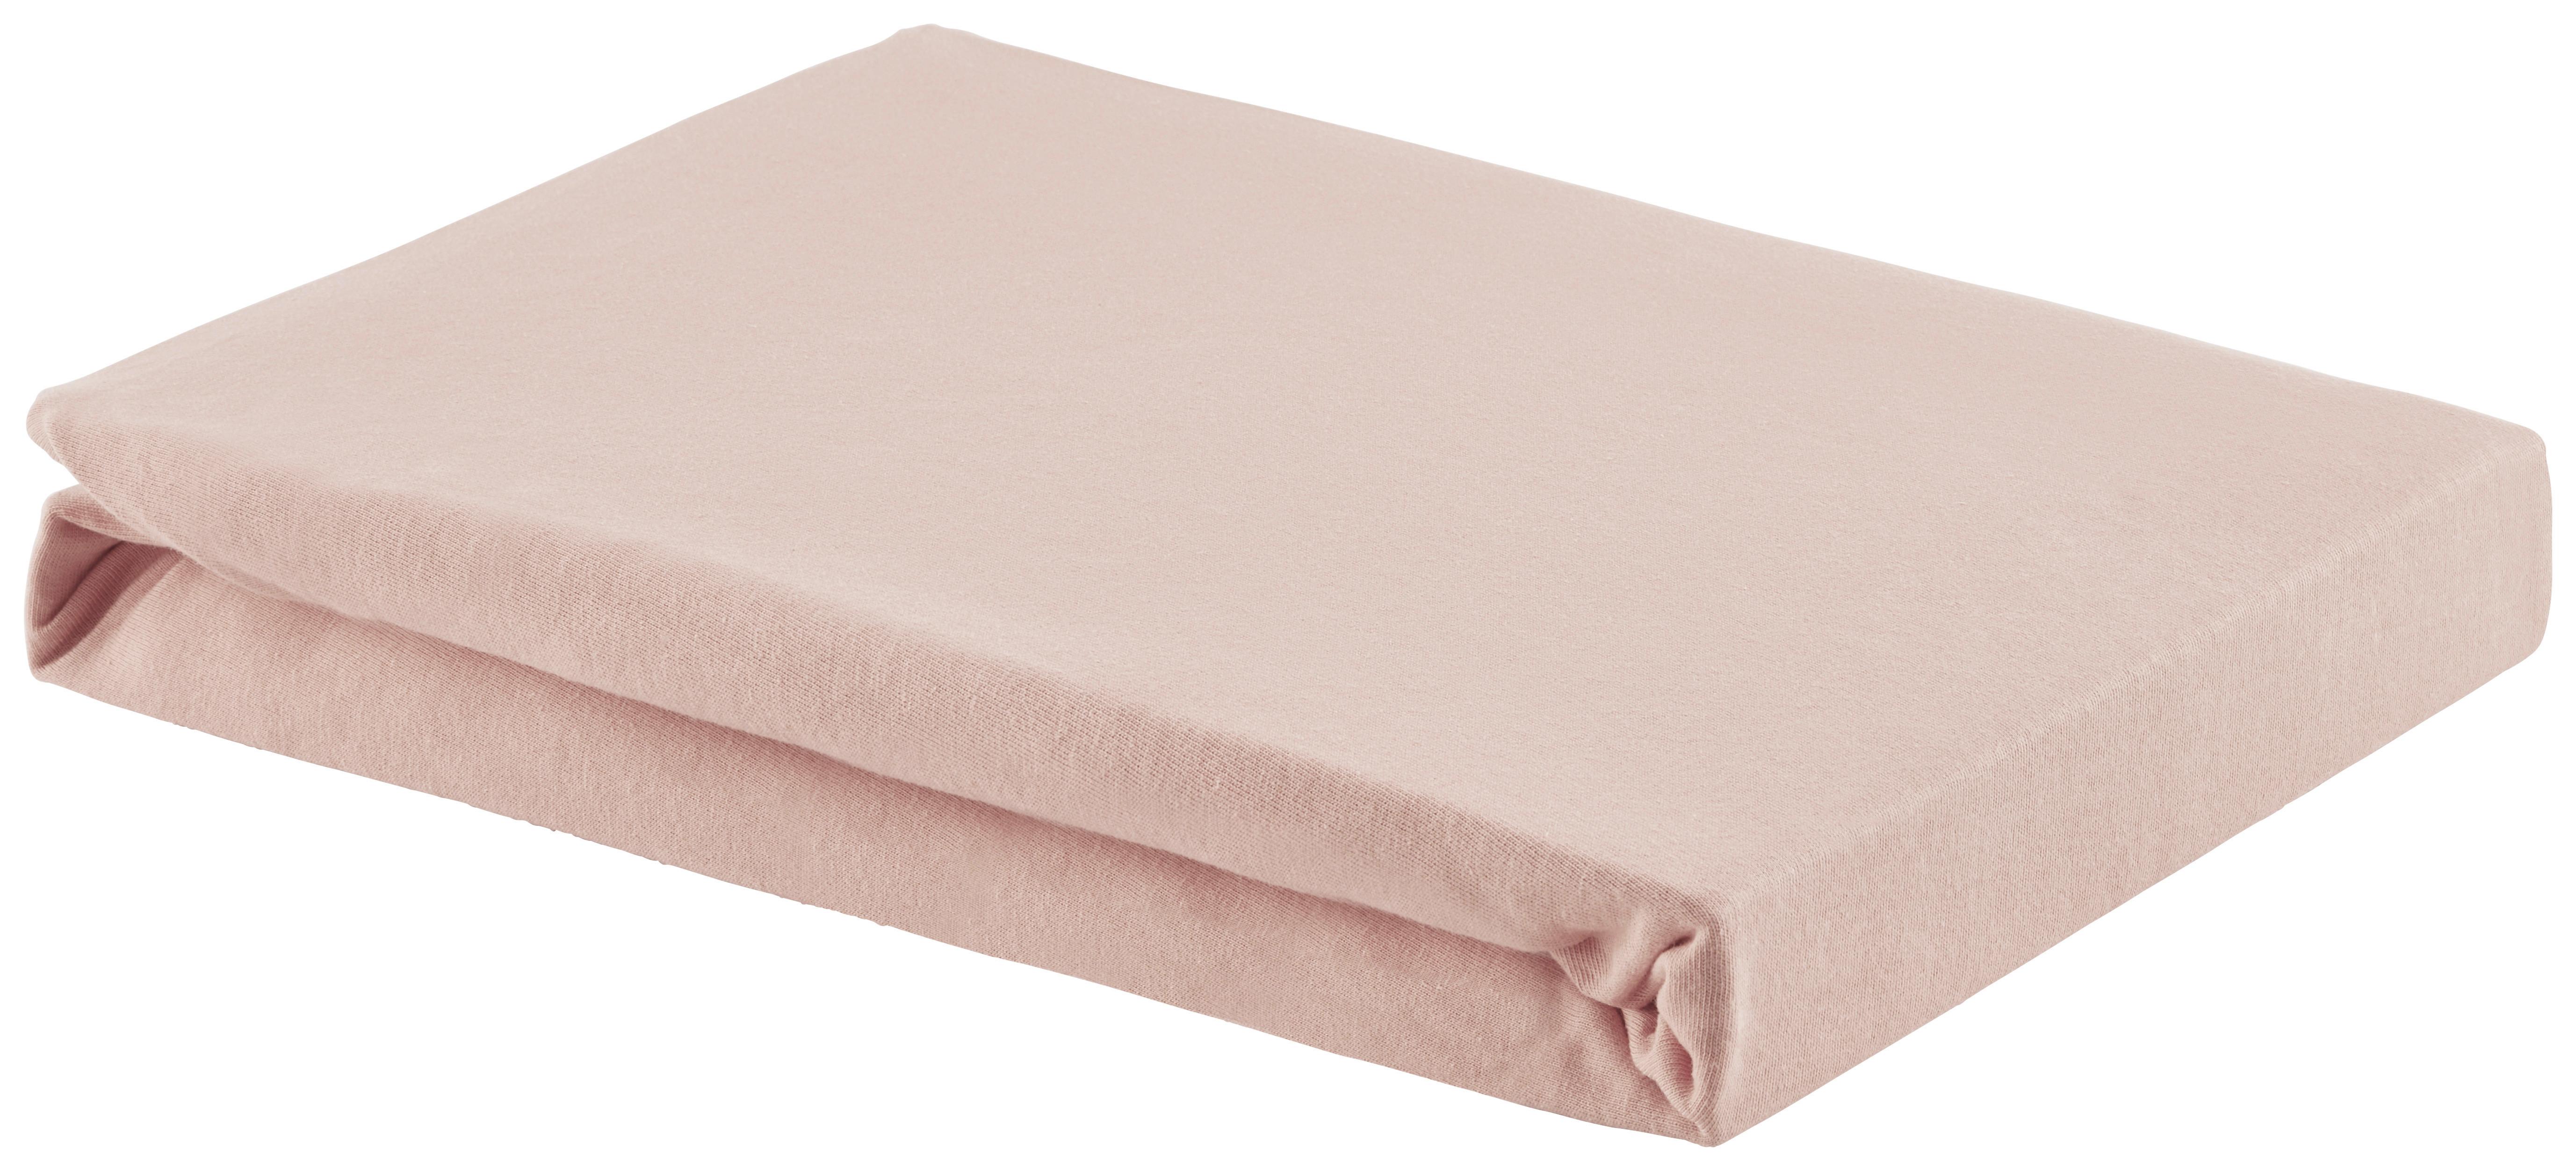 Elastické Prostěradlo Basic, 100/200cm, Růžová - růžová, textil (100/200cm) - Modern Living